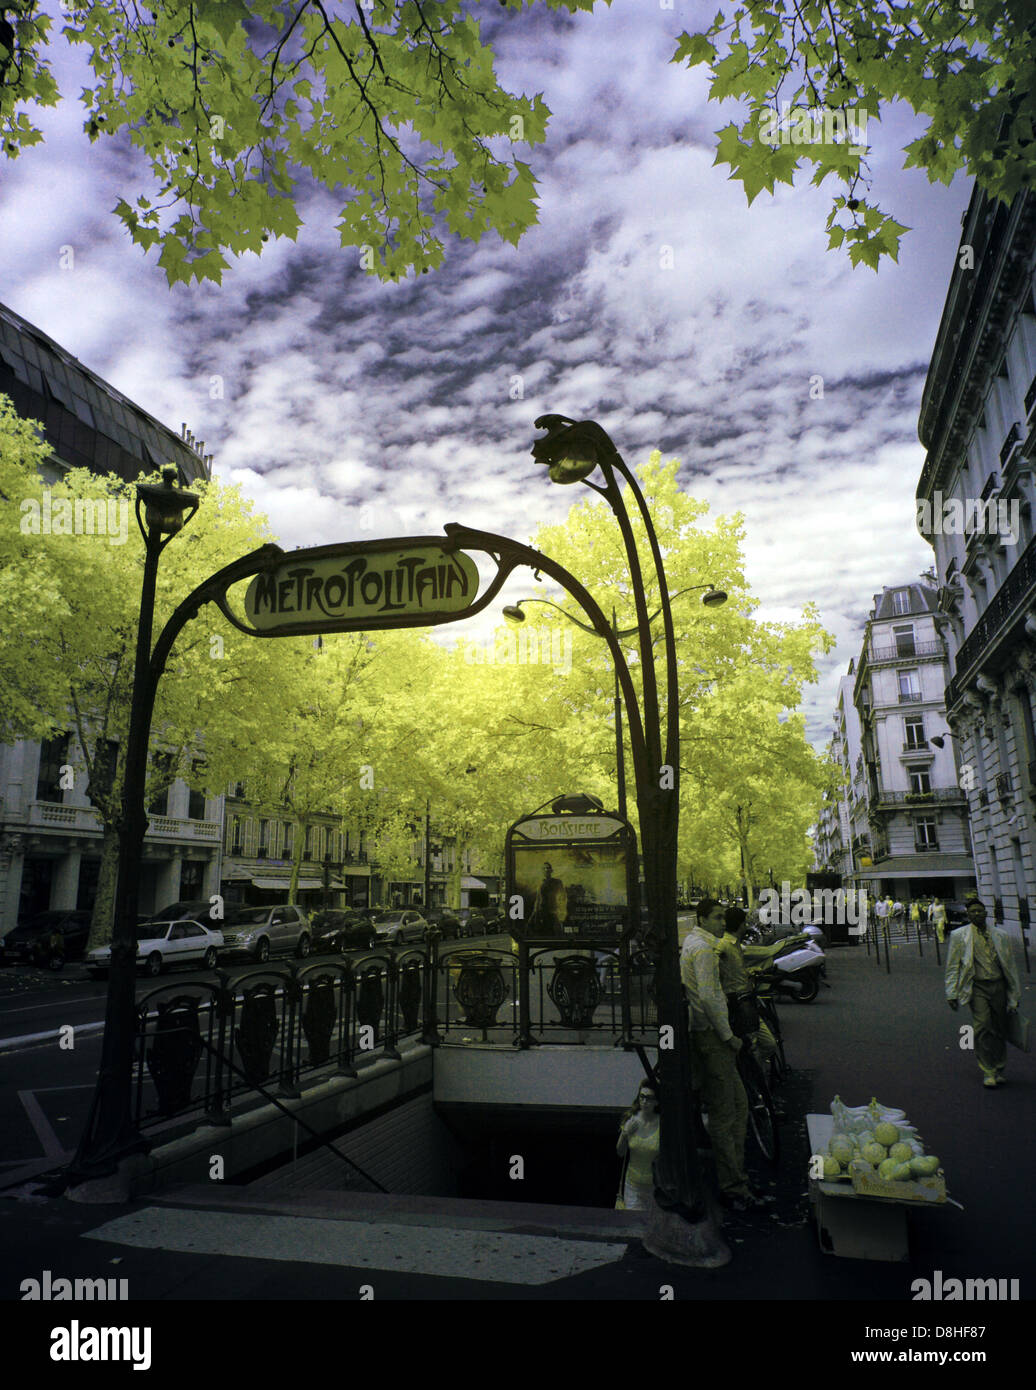 Une station de métro de Paris Art Nouveau avec une prise d'entrée adapté à l'infrarouge IR caméra Canon 5D, France, Europe Banque D'Images